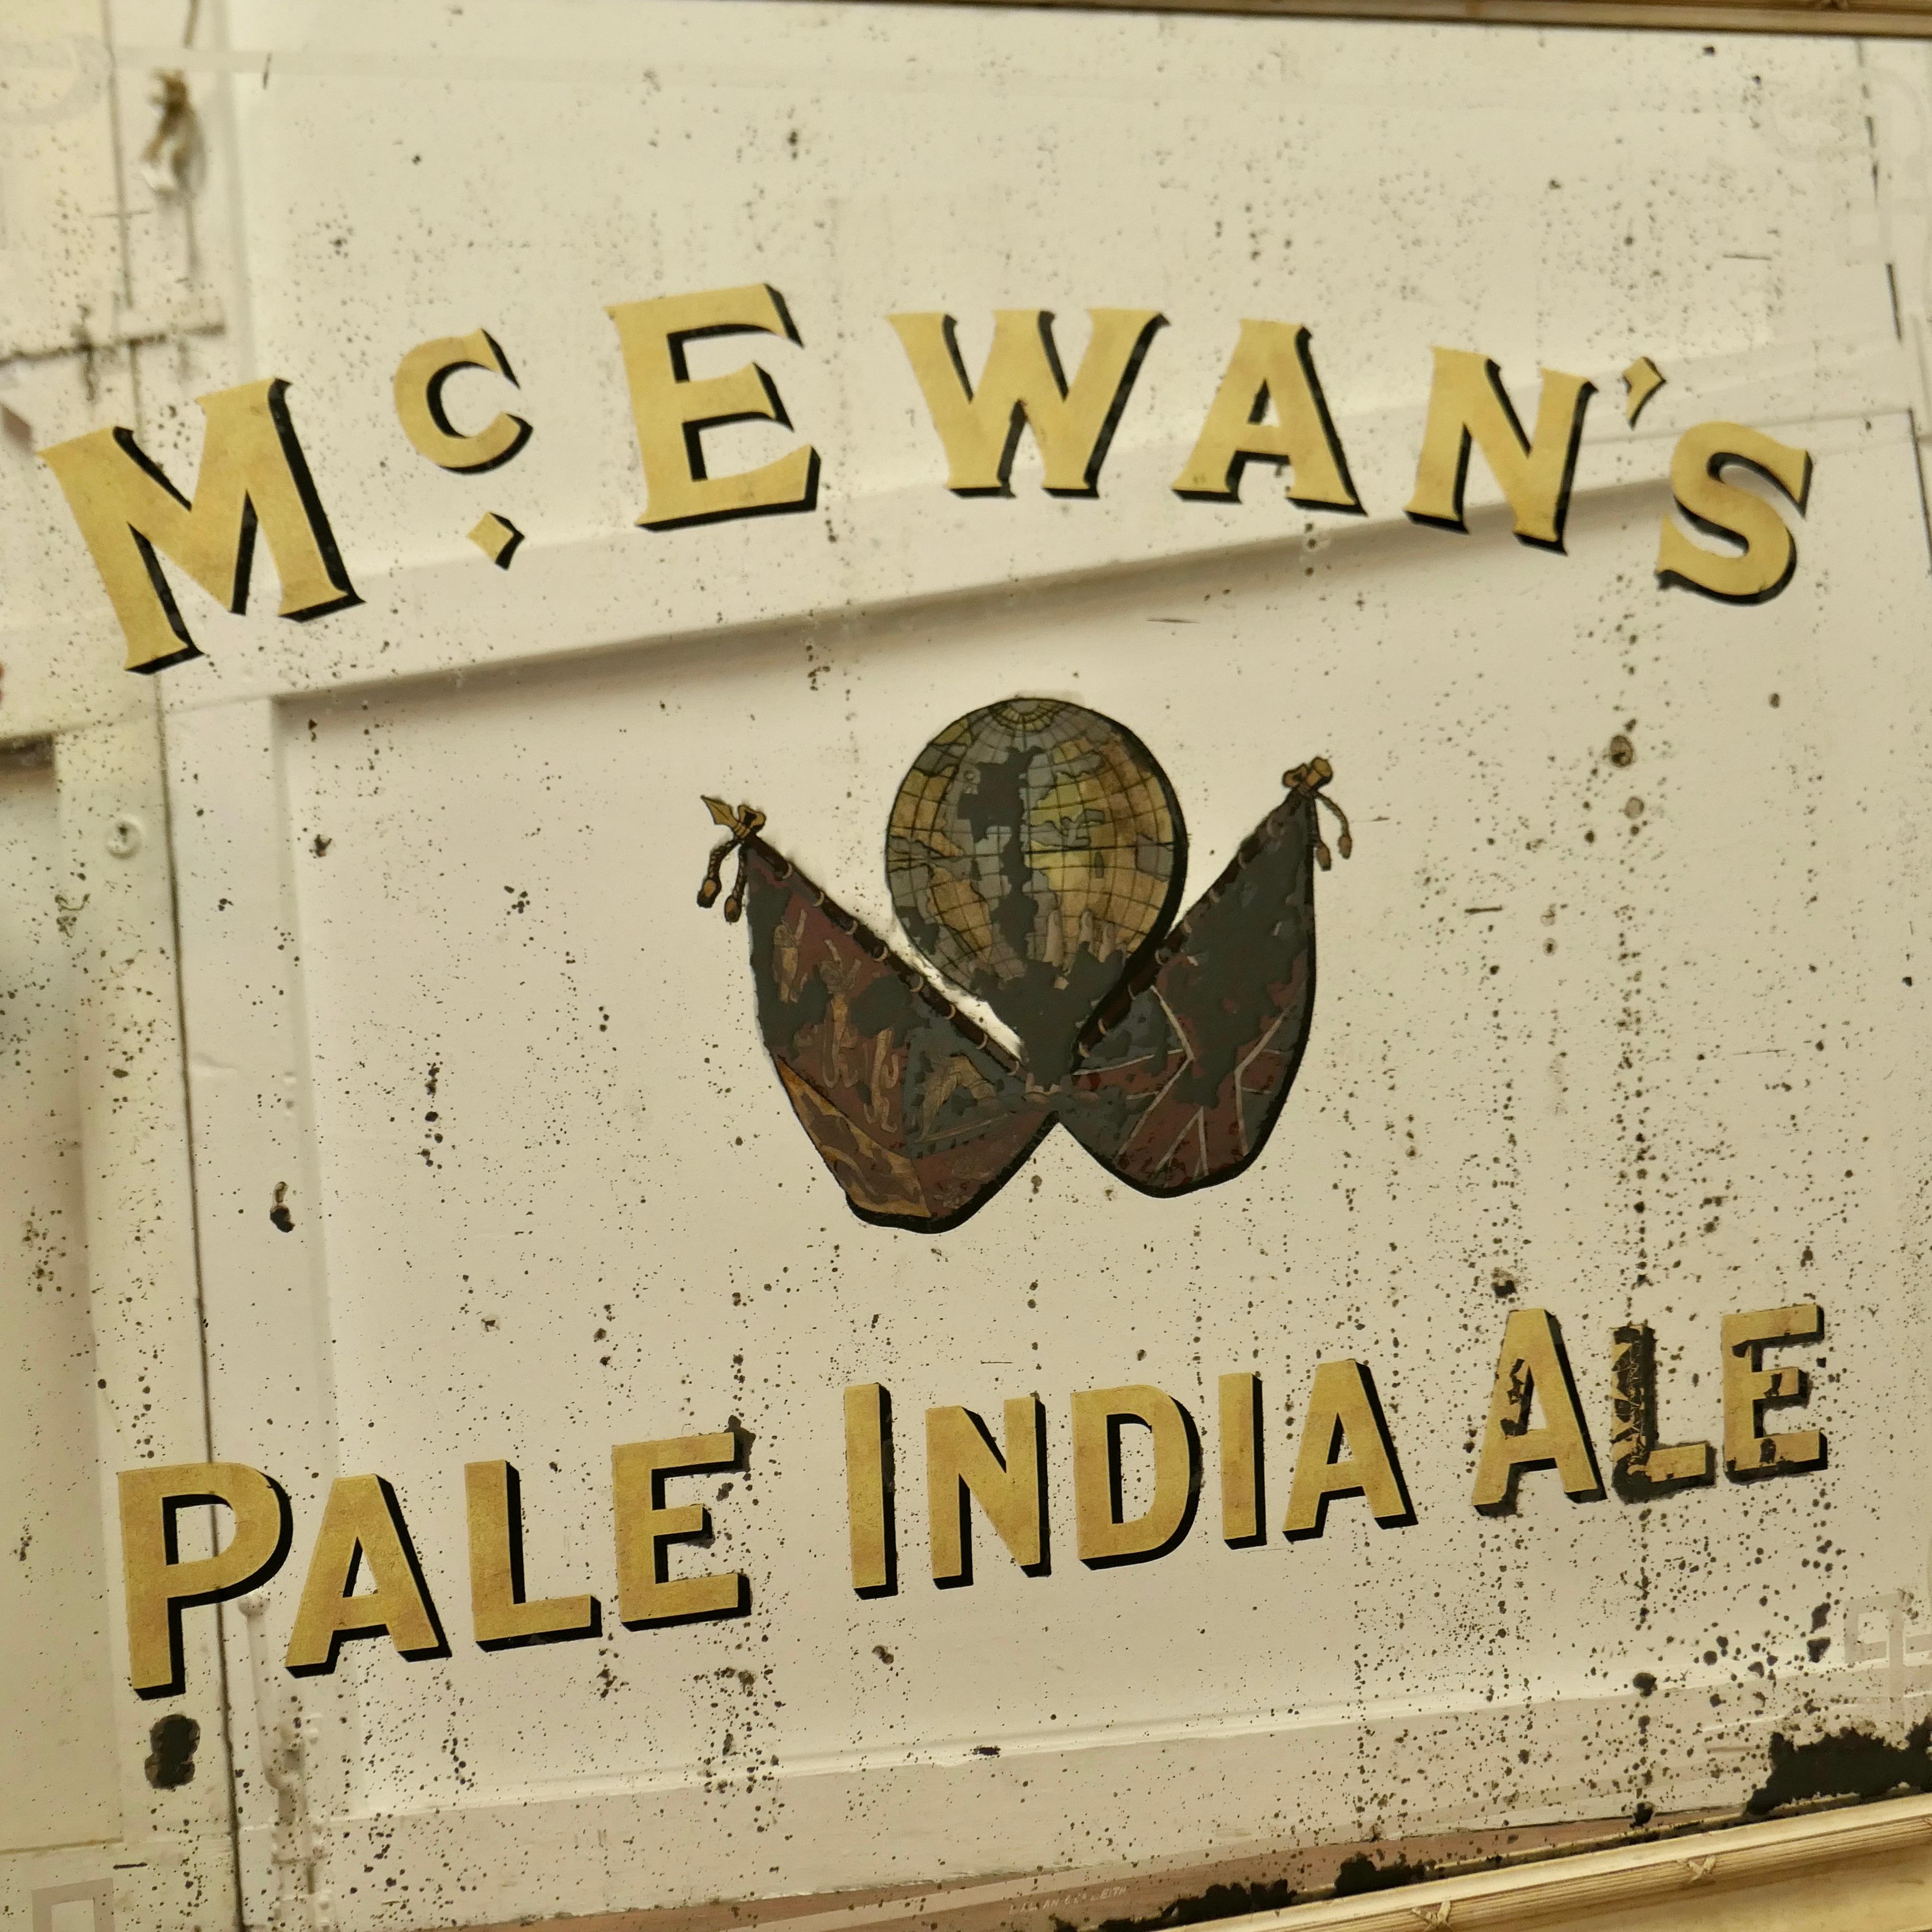 Ein großer McEwan's Pale India Ale Werbespiegel, Pub Sign Spiegel für McEwans  im Angebot 8